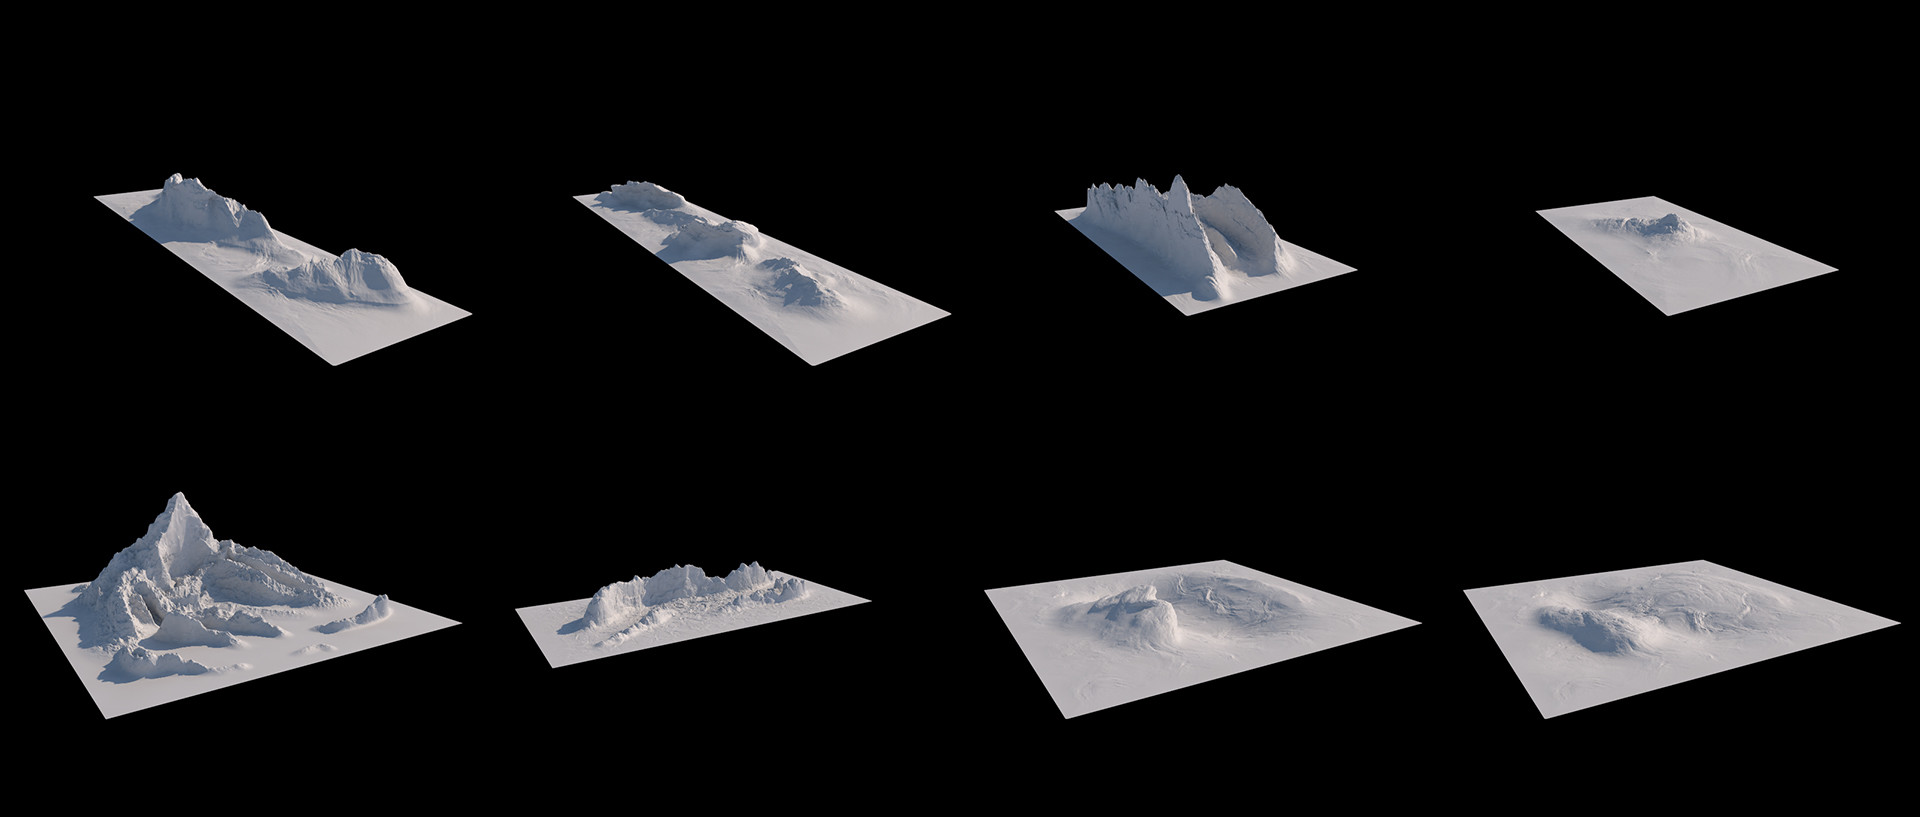 مدل سه بعدی کوه برای سینمافوردی - 8